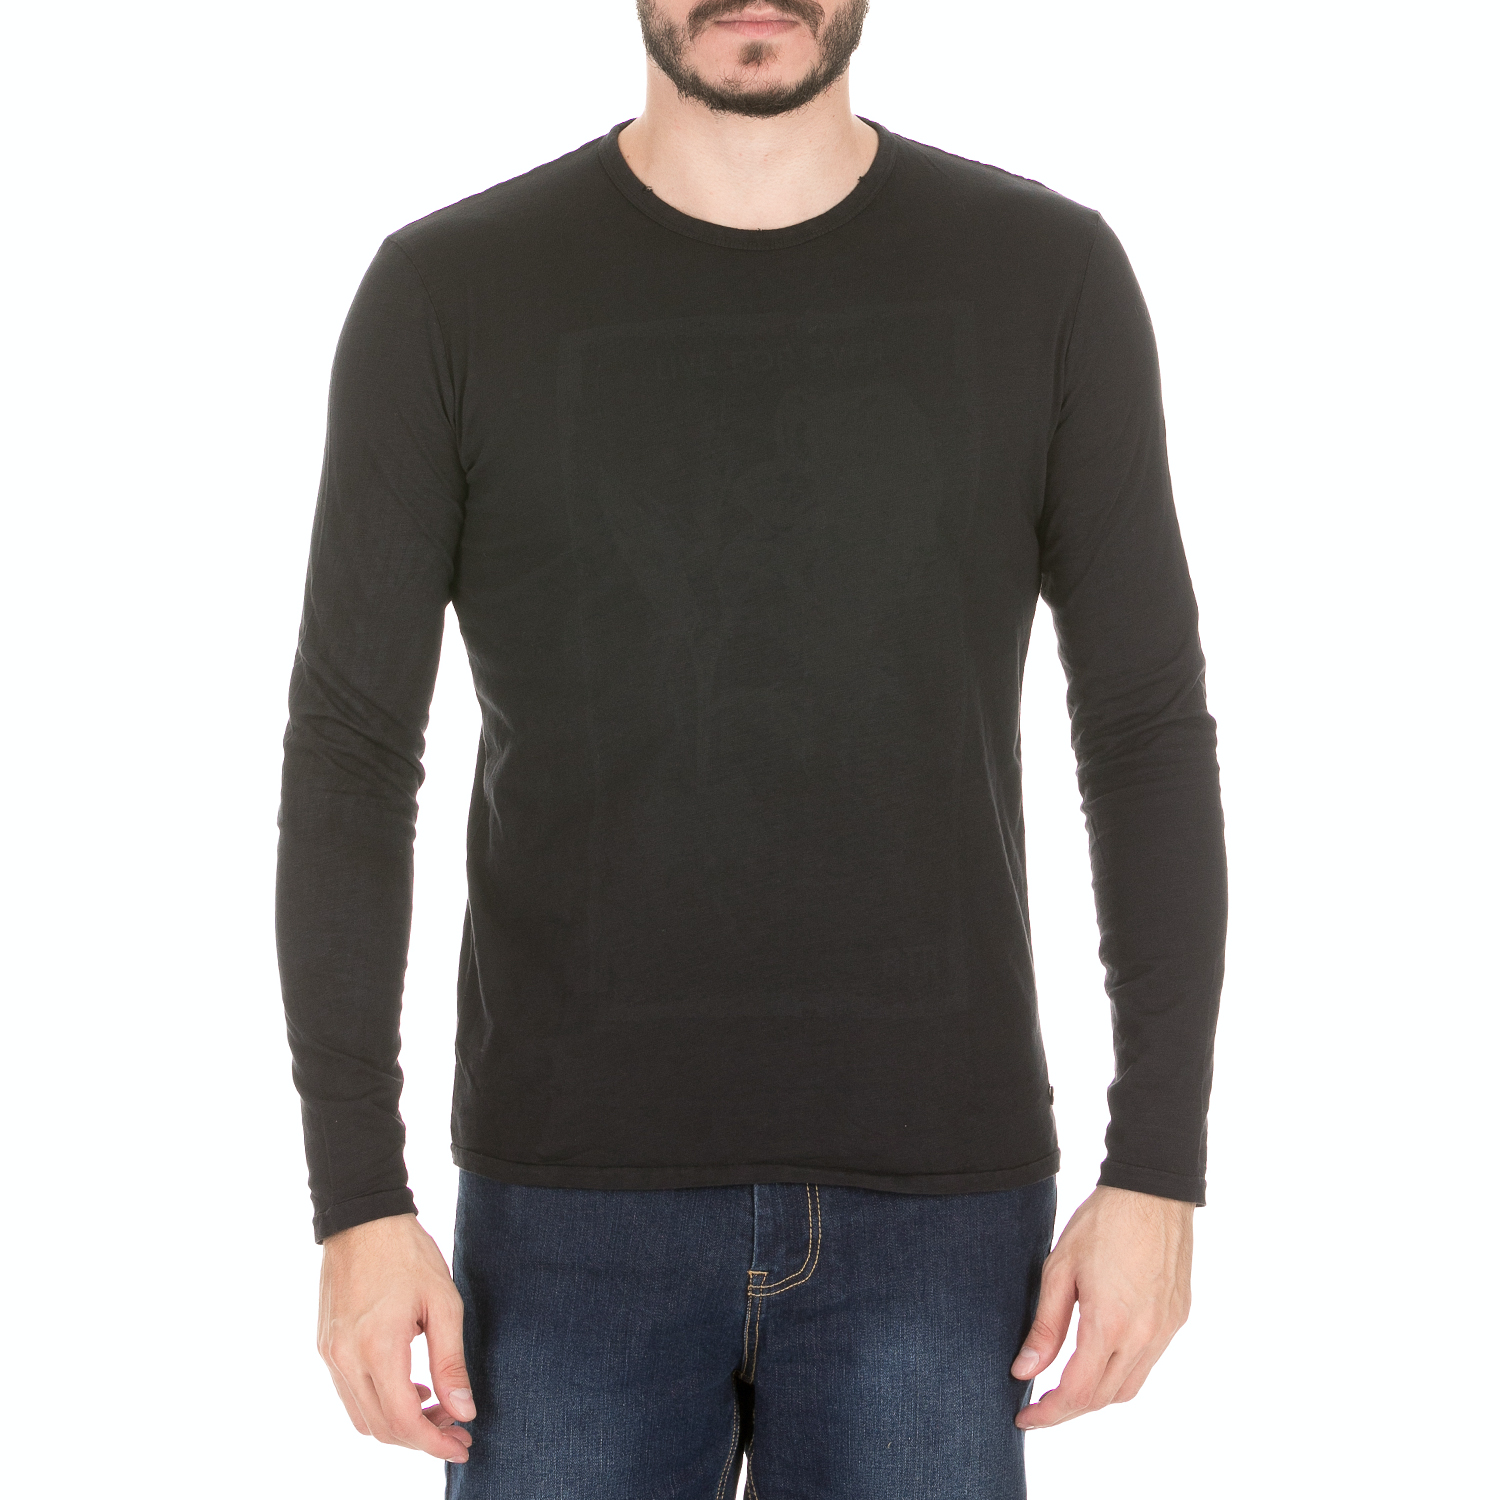 BATTERY - Ανδρική μπλούζα BATTERY μαύρη Ανδρικά/Ρούχα/Μπλούζες/Μακρυμάνικες